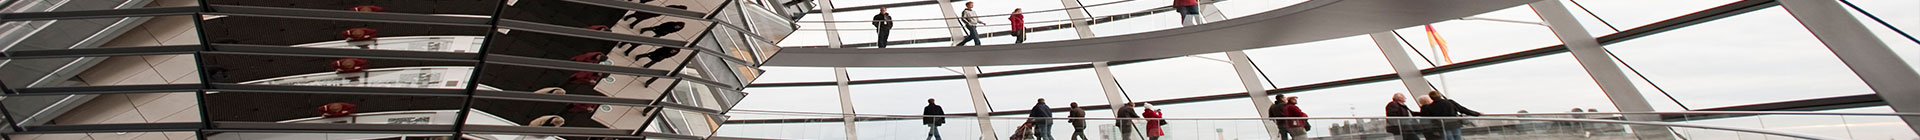 Blick in die Kuppel des Reichstagsgebäudes mit Personen unterschiedlichen Alters, die in der Spiegesäule reflektieren